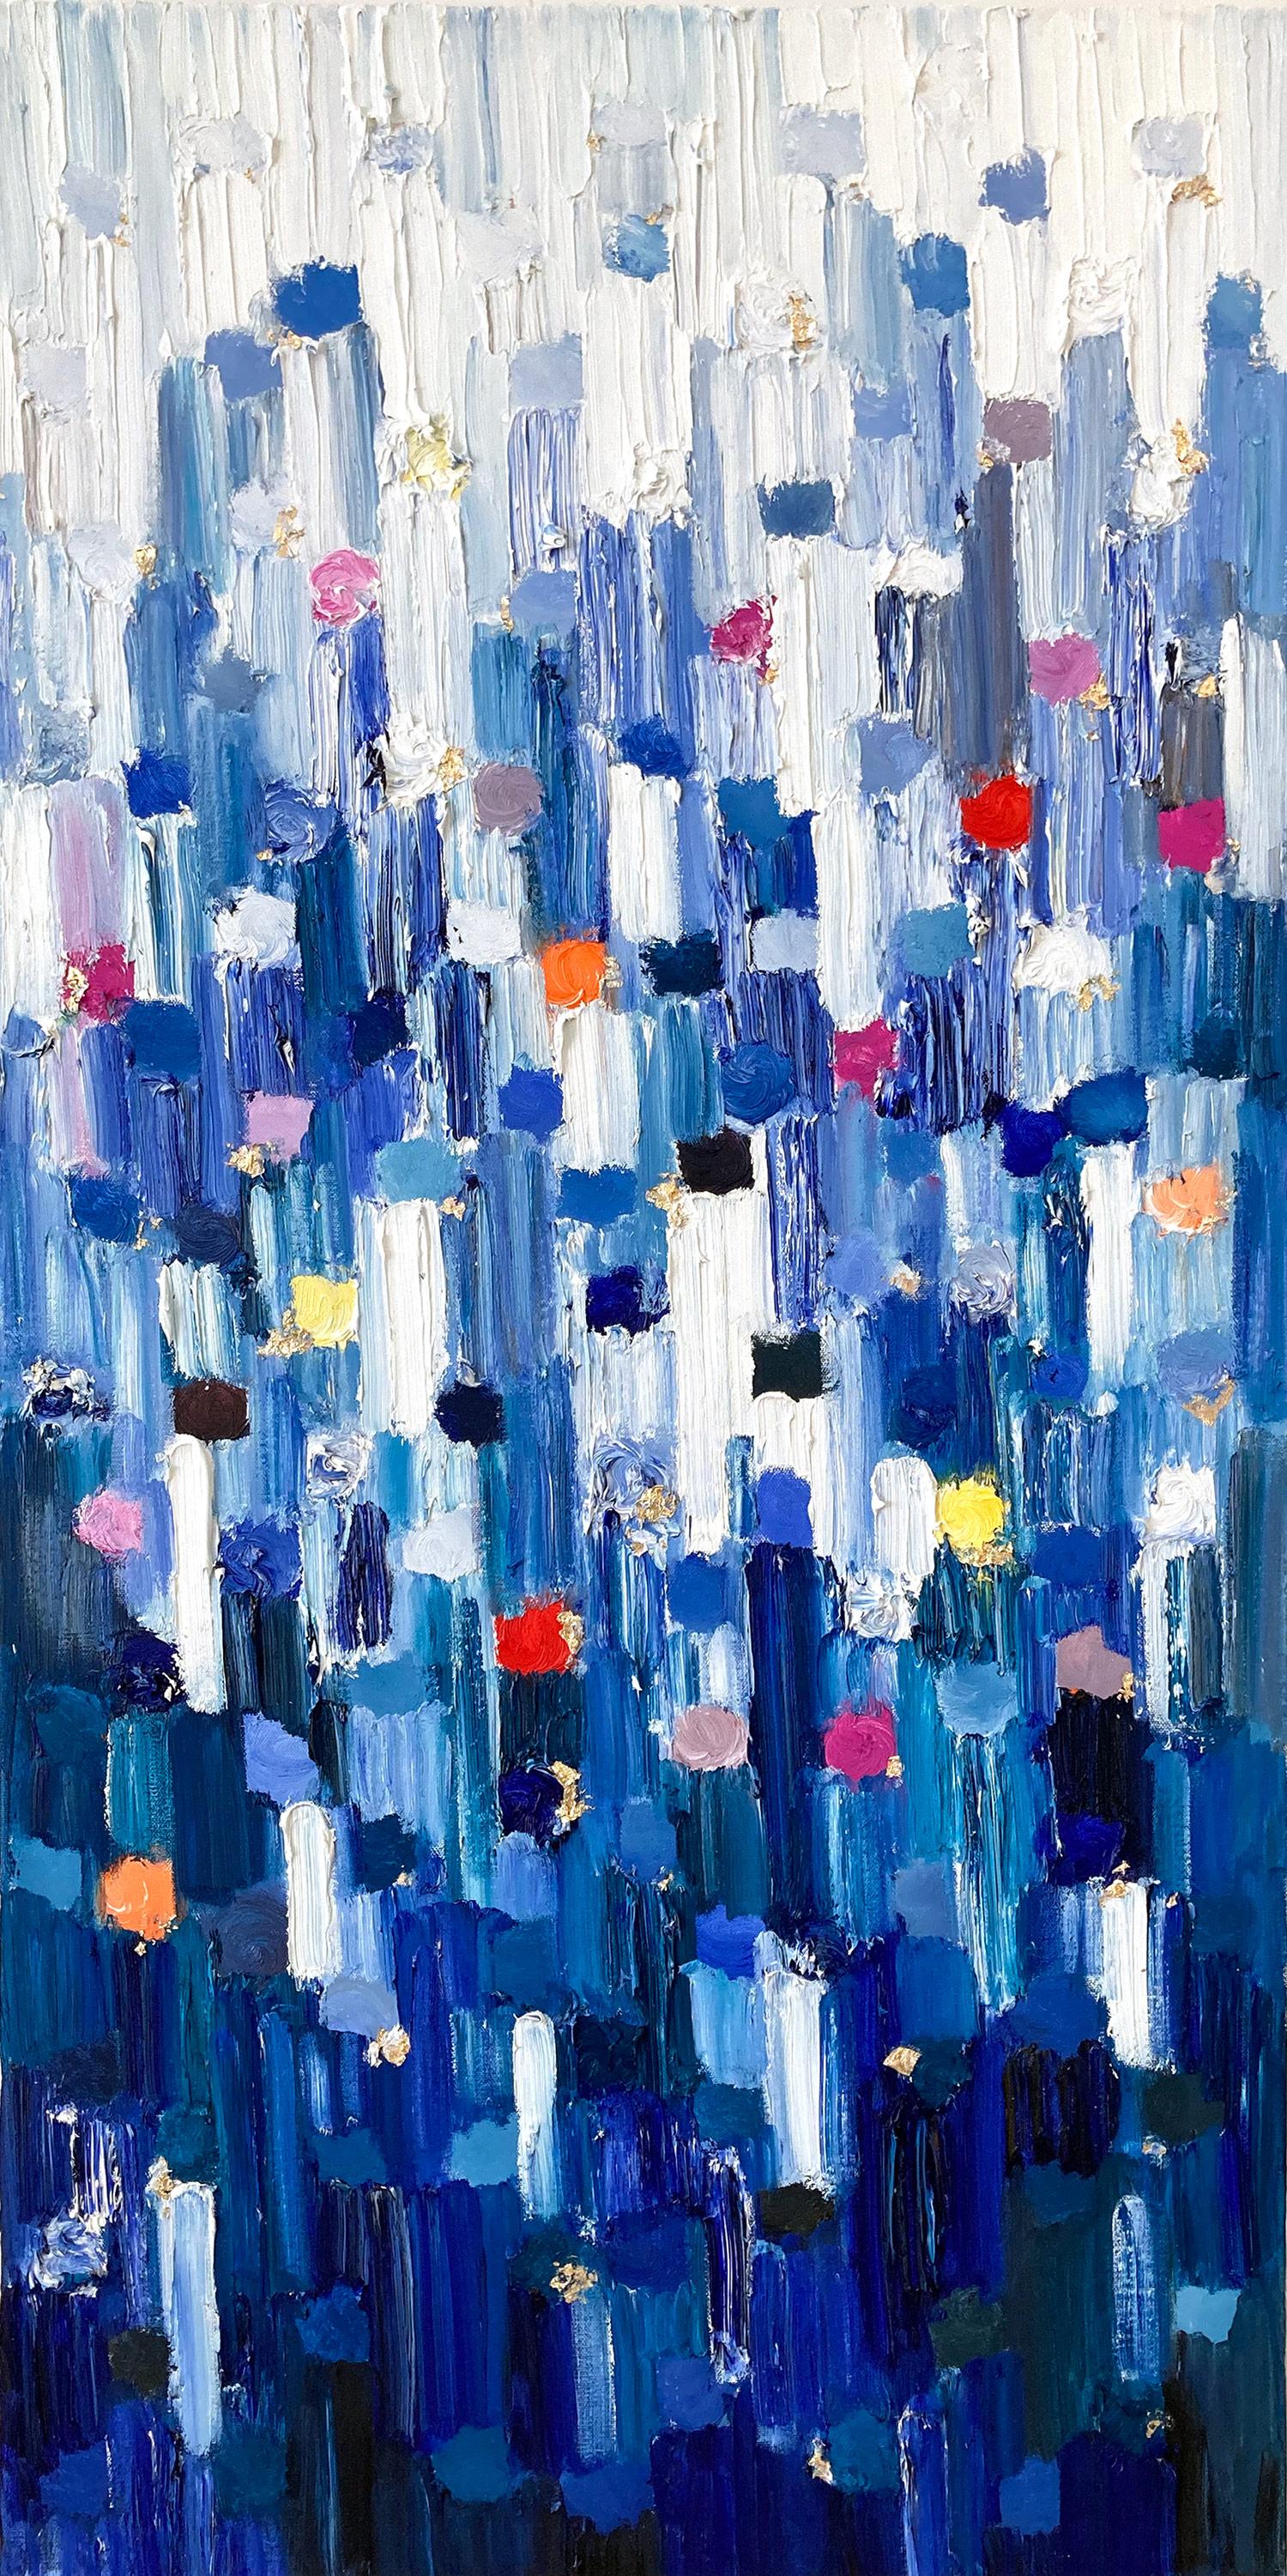 Abstract Painting Cindy Shaoul - "Dripping Dots - Madison" - Peinture à l'huile abstraite colorée sur toile technique mixte 